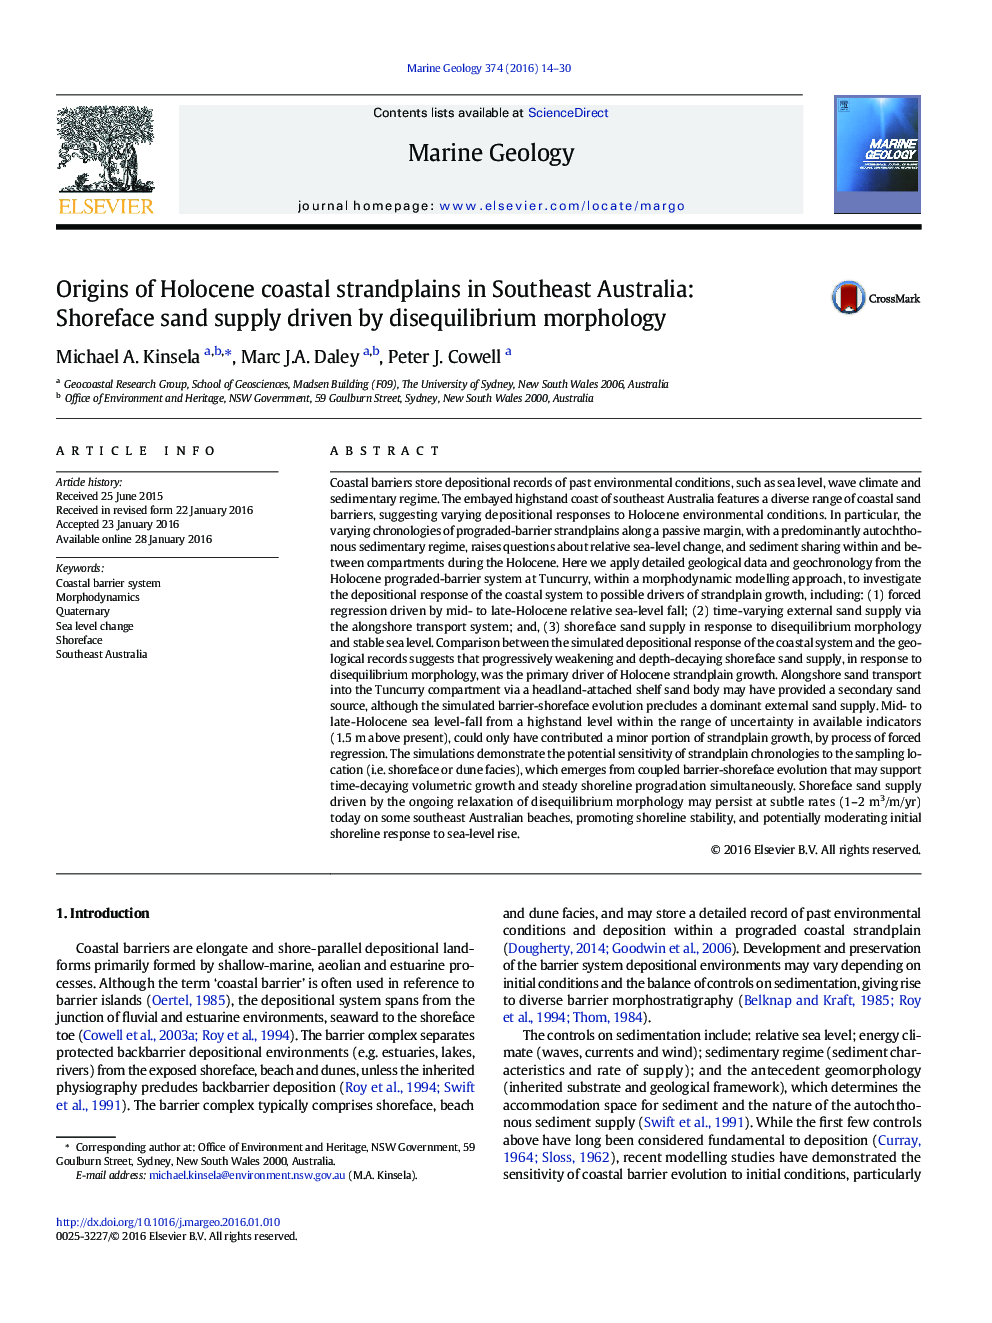 ریشه های رشته های ساحلی هولوسن در جنوب شرقی استرالیا: تامین شن و ماسه های ماسه ای ناشی از مورفولوژی ناپیوستگی 